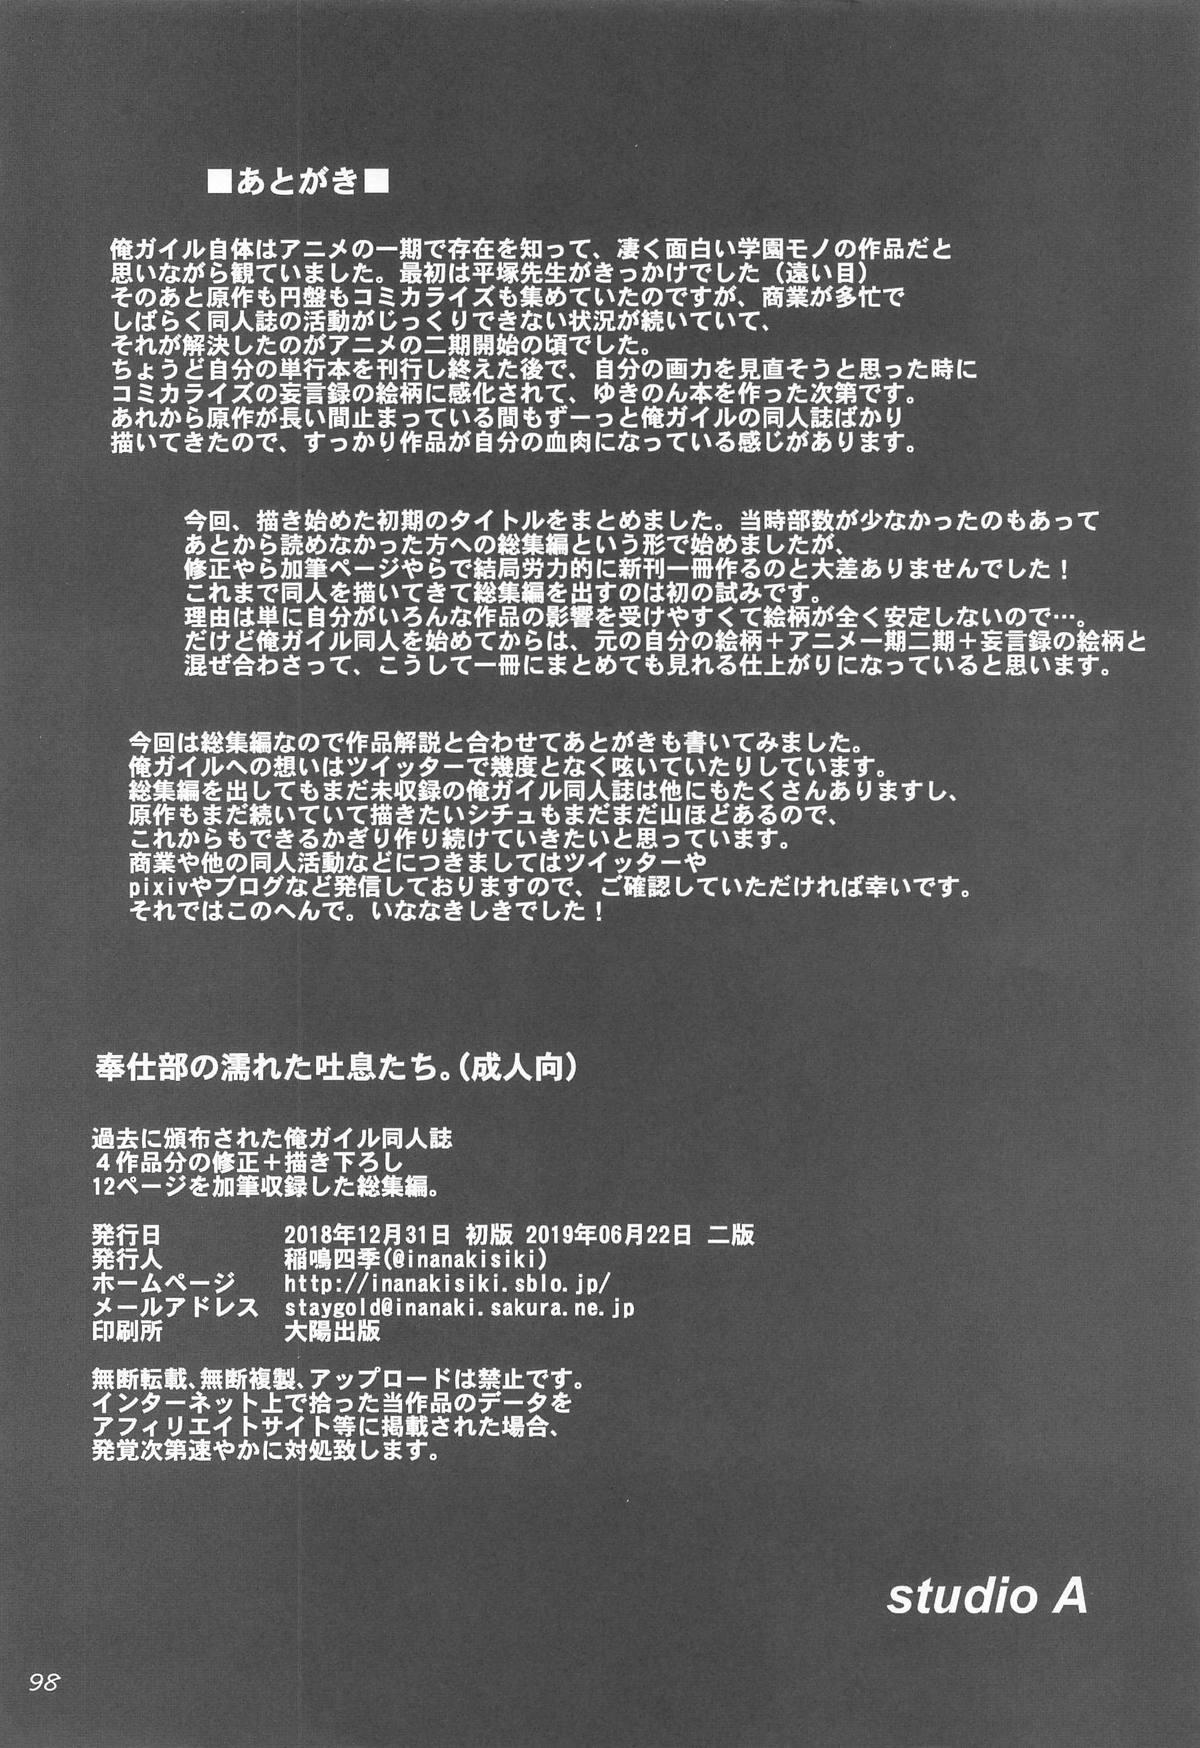 [studio A (Inanaki Shiki)] Houshi-bu no Nureta Toiki-tachi. (Yahari Ore no Seishun Love Come wa Machigatteiru.) [2019-06-22] 96